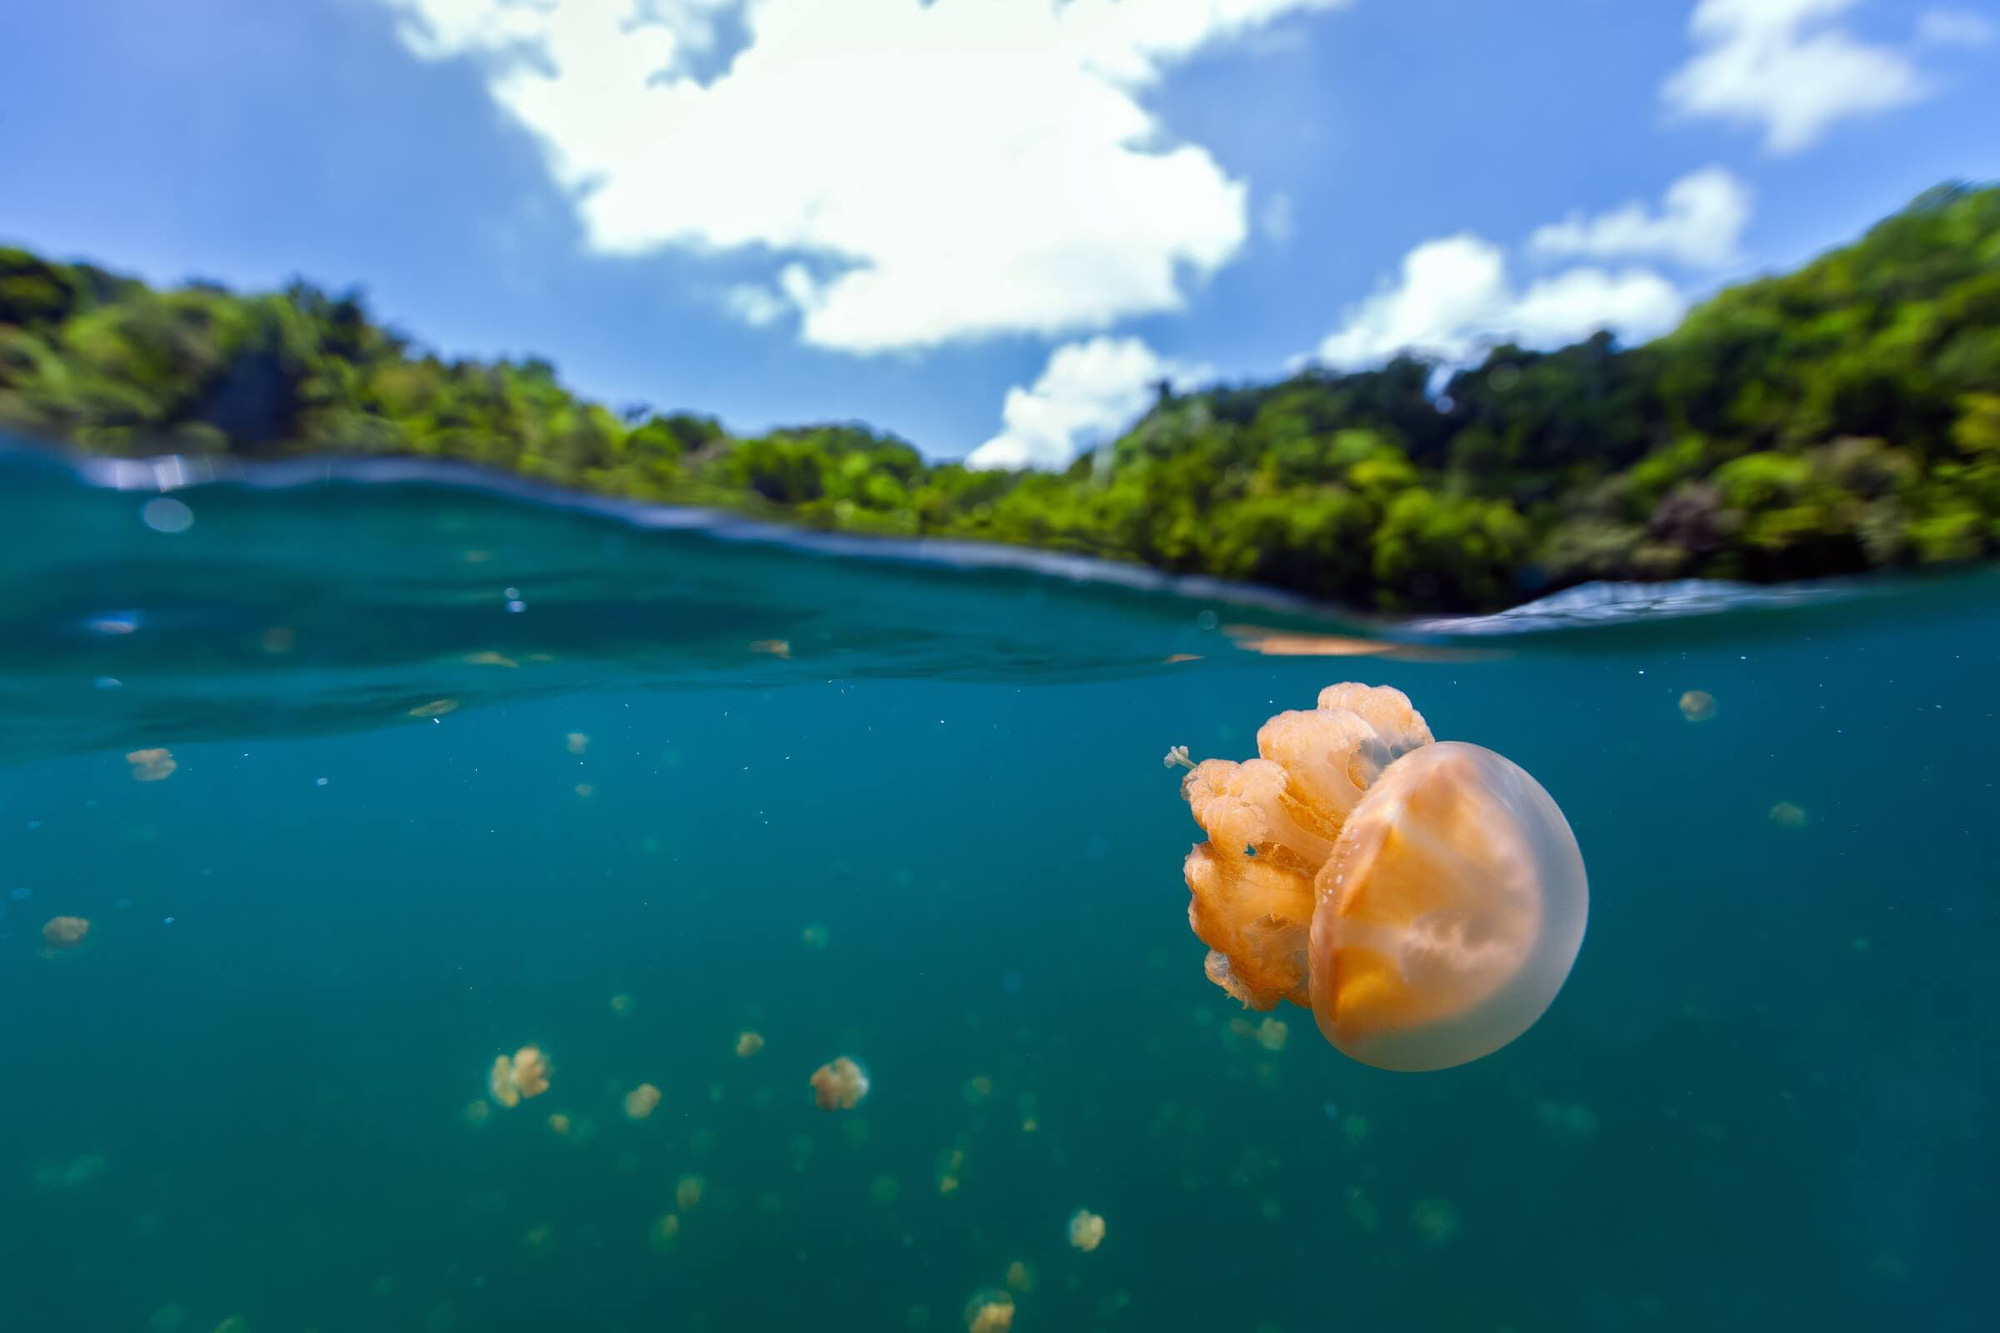 Rùng mình hồ chứa hàng triệu con sứa nhưng khách du lịch vẫn thích mê - Ảnh 1.